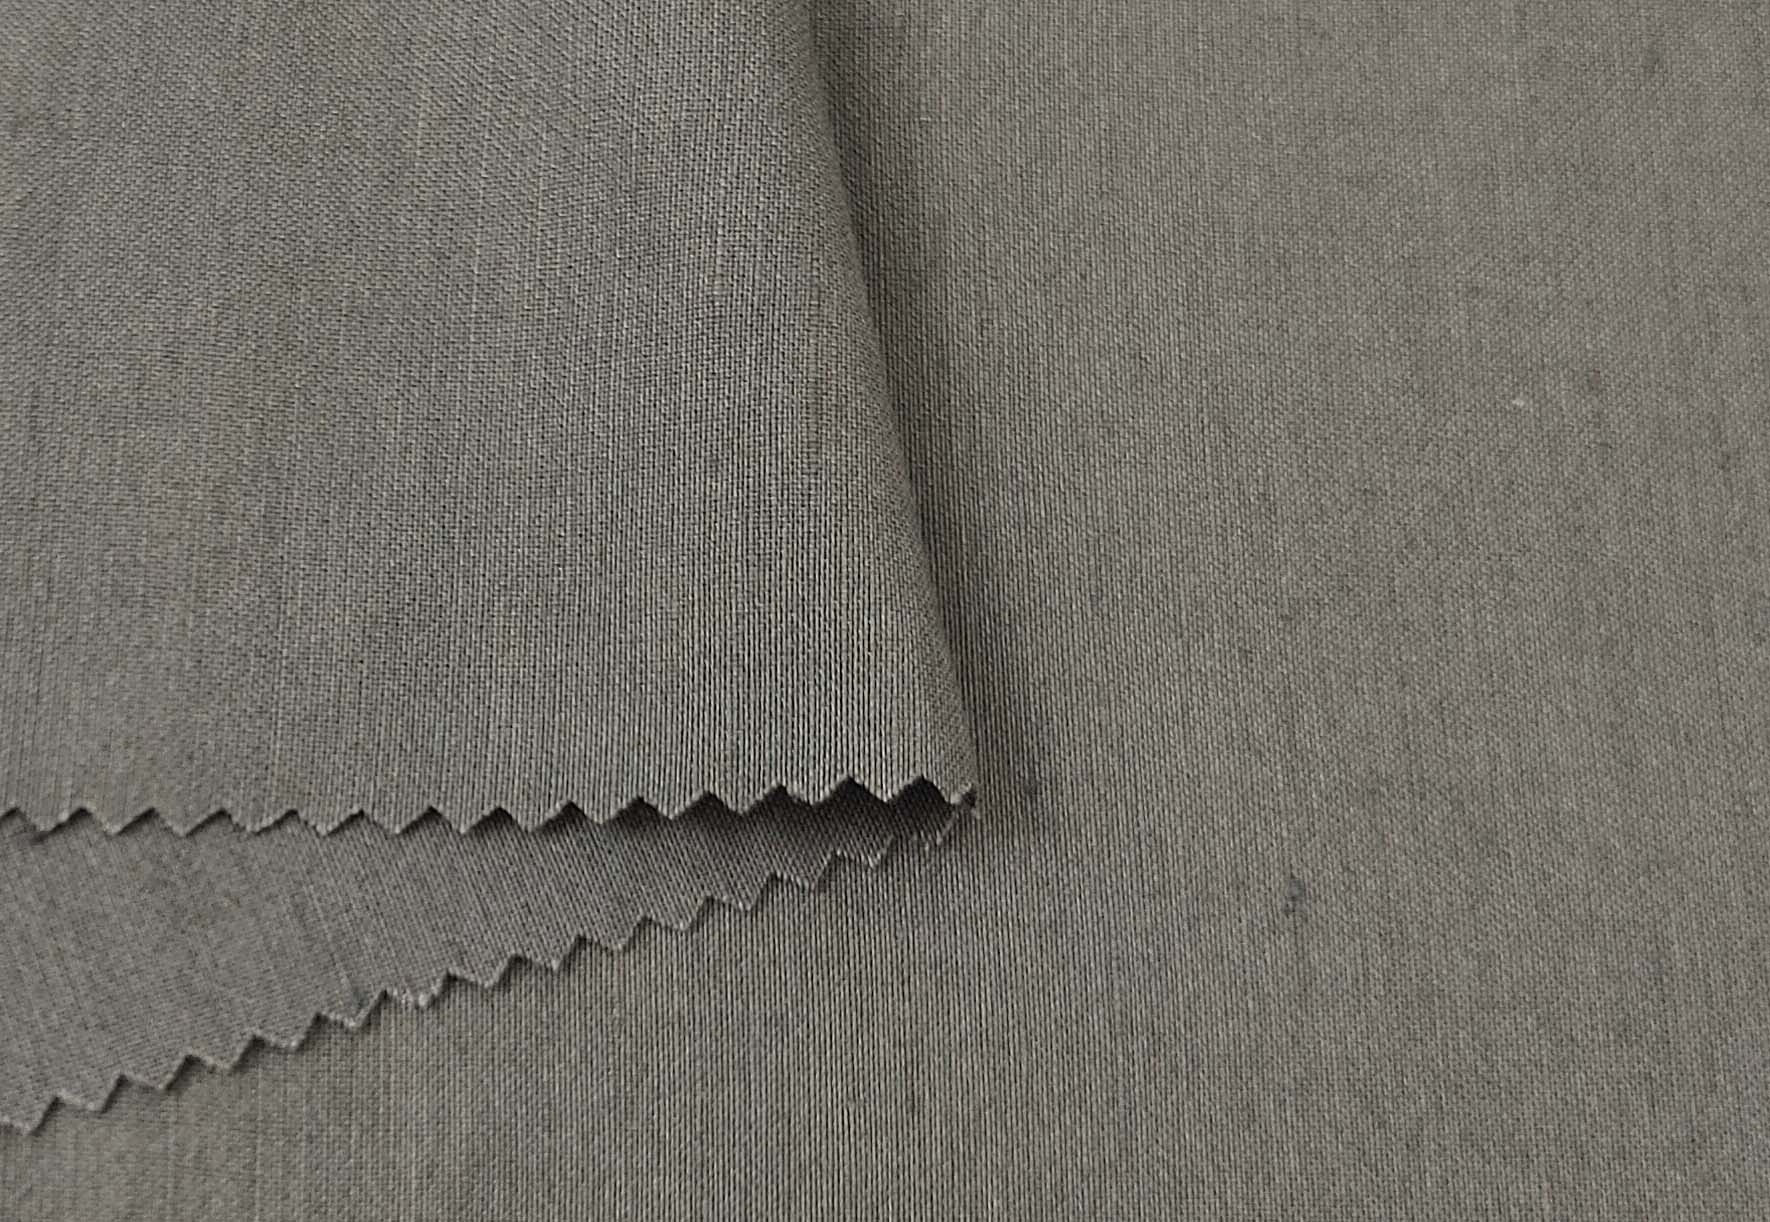 Linen Tencel Silk Fabric: Light Weight, Plain Weave 6898 7666 7667 - The Linen Lab - Khaki